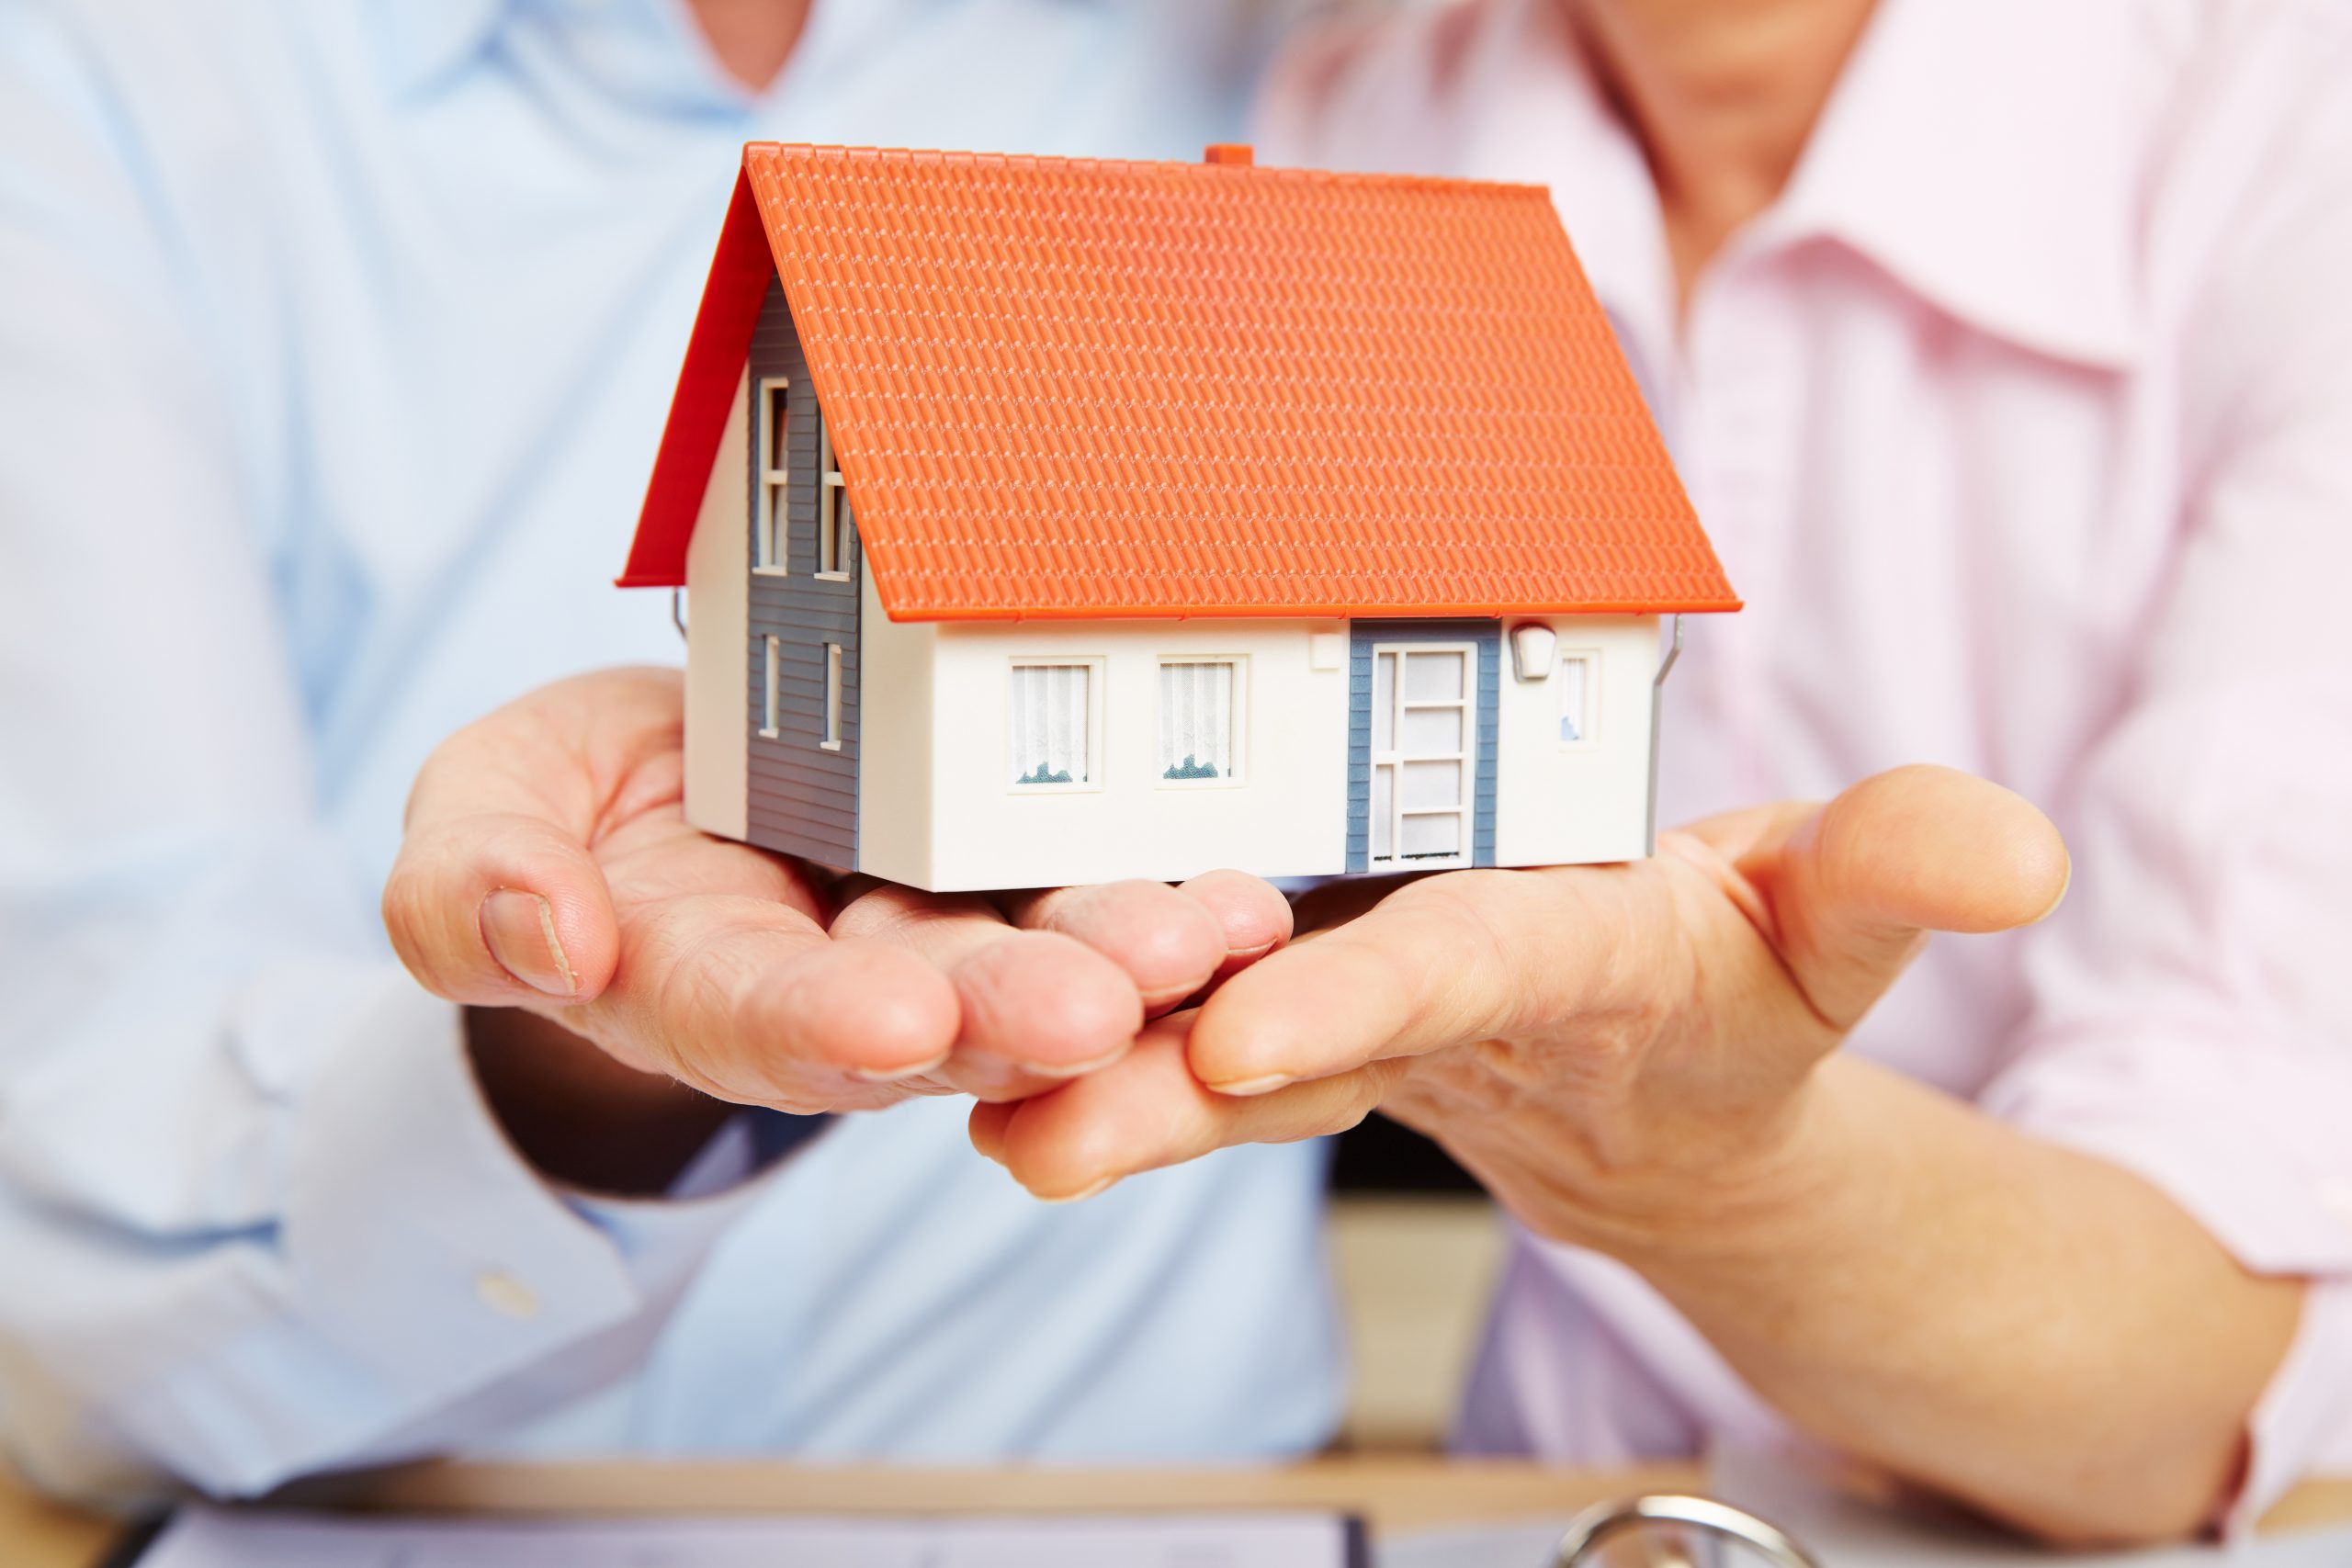 Assurance de prêt immobilier : est-ce intéressant pour les séniors ?